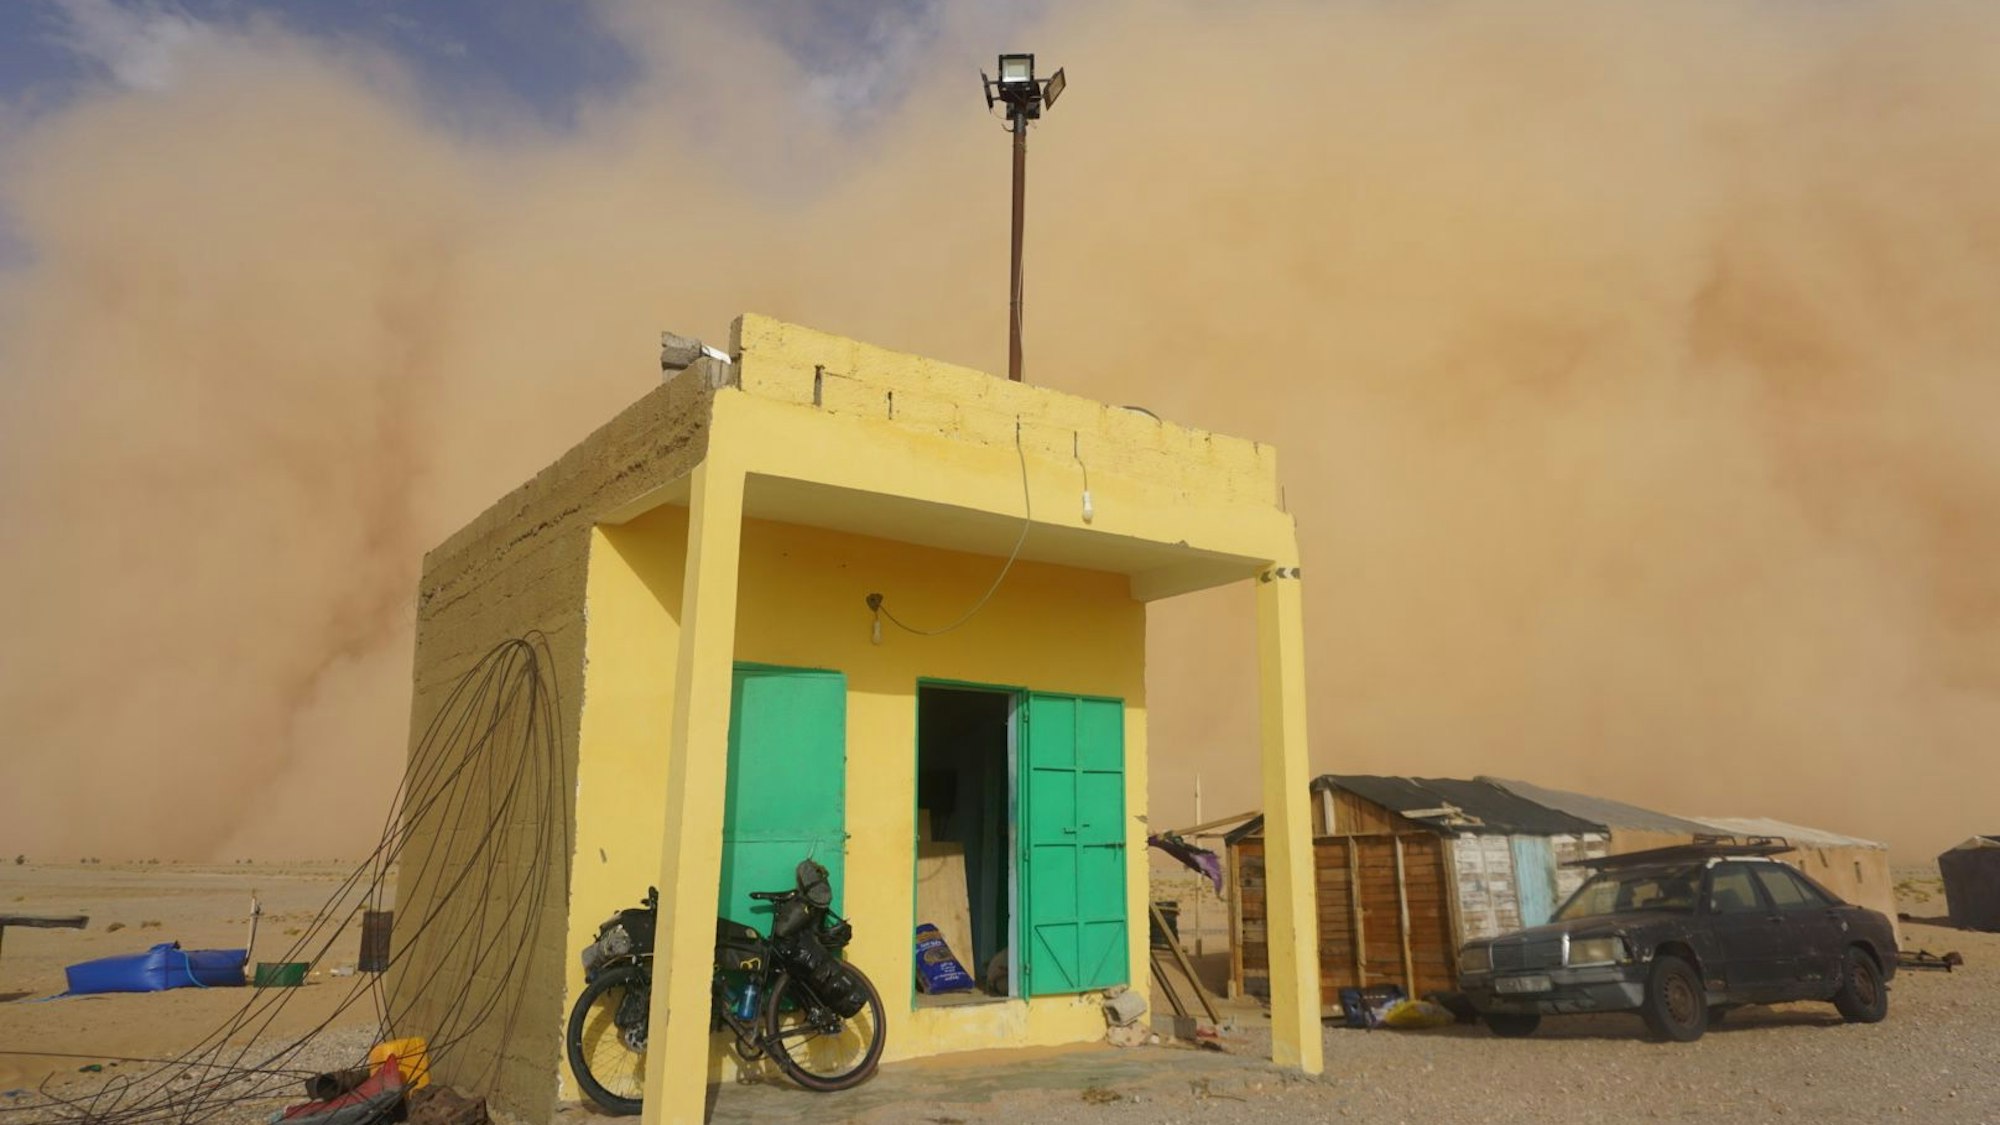 Ein kleines Gebäude am Straßenrand, dahinter ist der Sandsturm zu sehen.